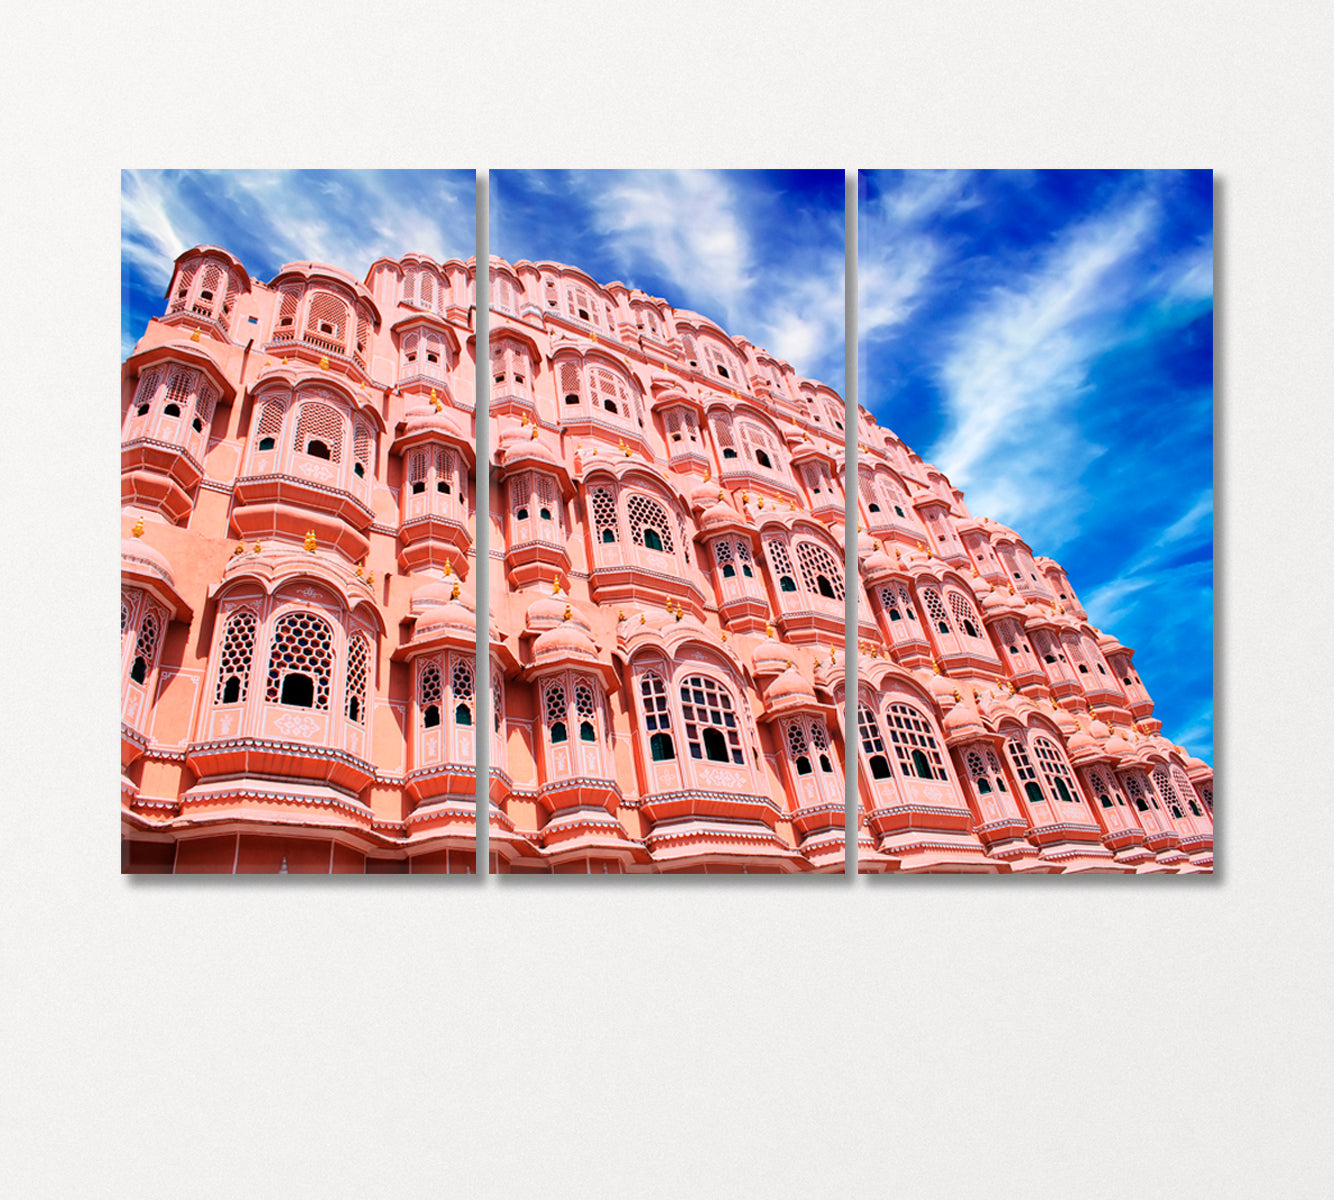 Hawa Mahal India Canvas Print-Canvas Print-CetArt-3 Panels-36x24 inches-CetArt